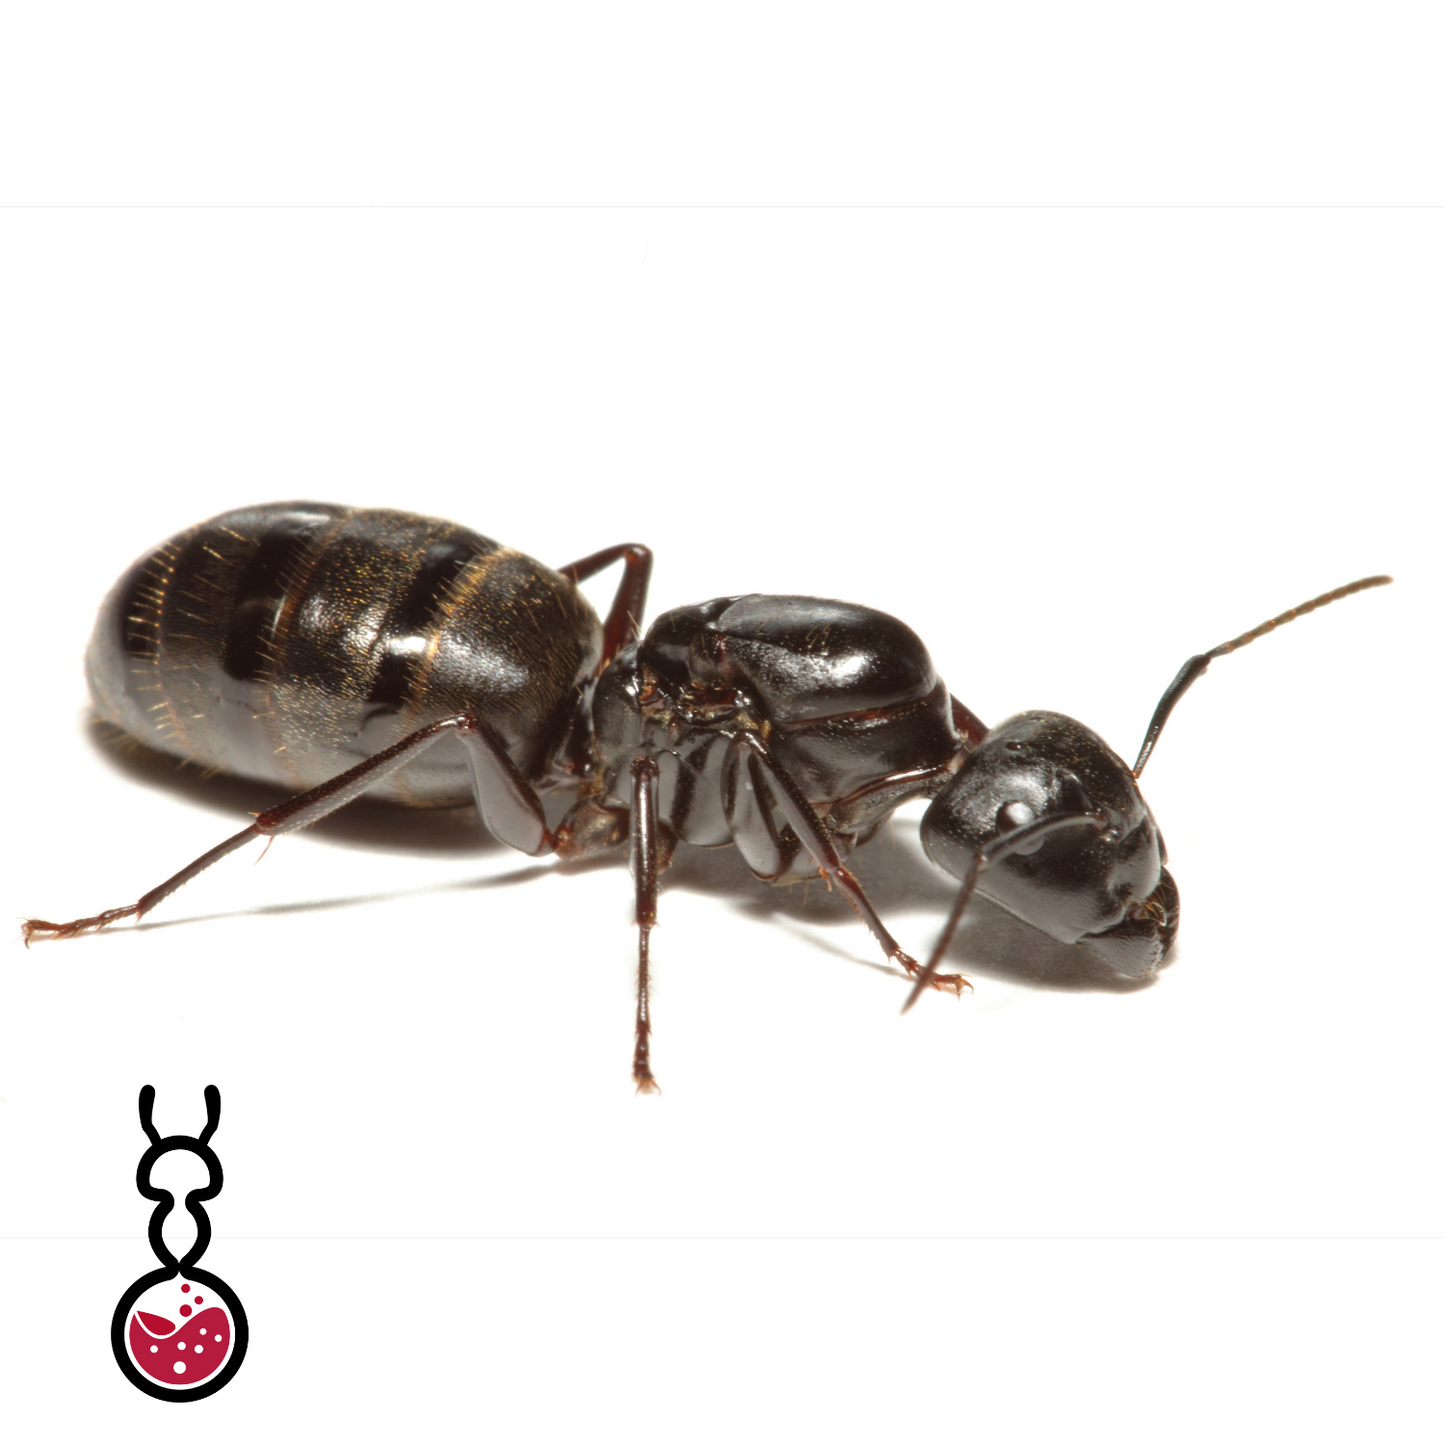 Camponotus Pennsylvanicus ||Live Queen|| [Eastern Black Carpenter Ant]